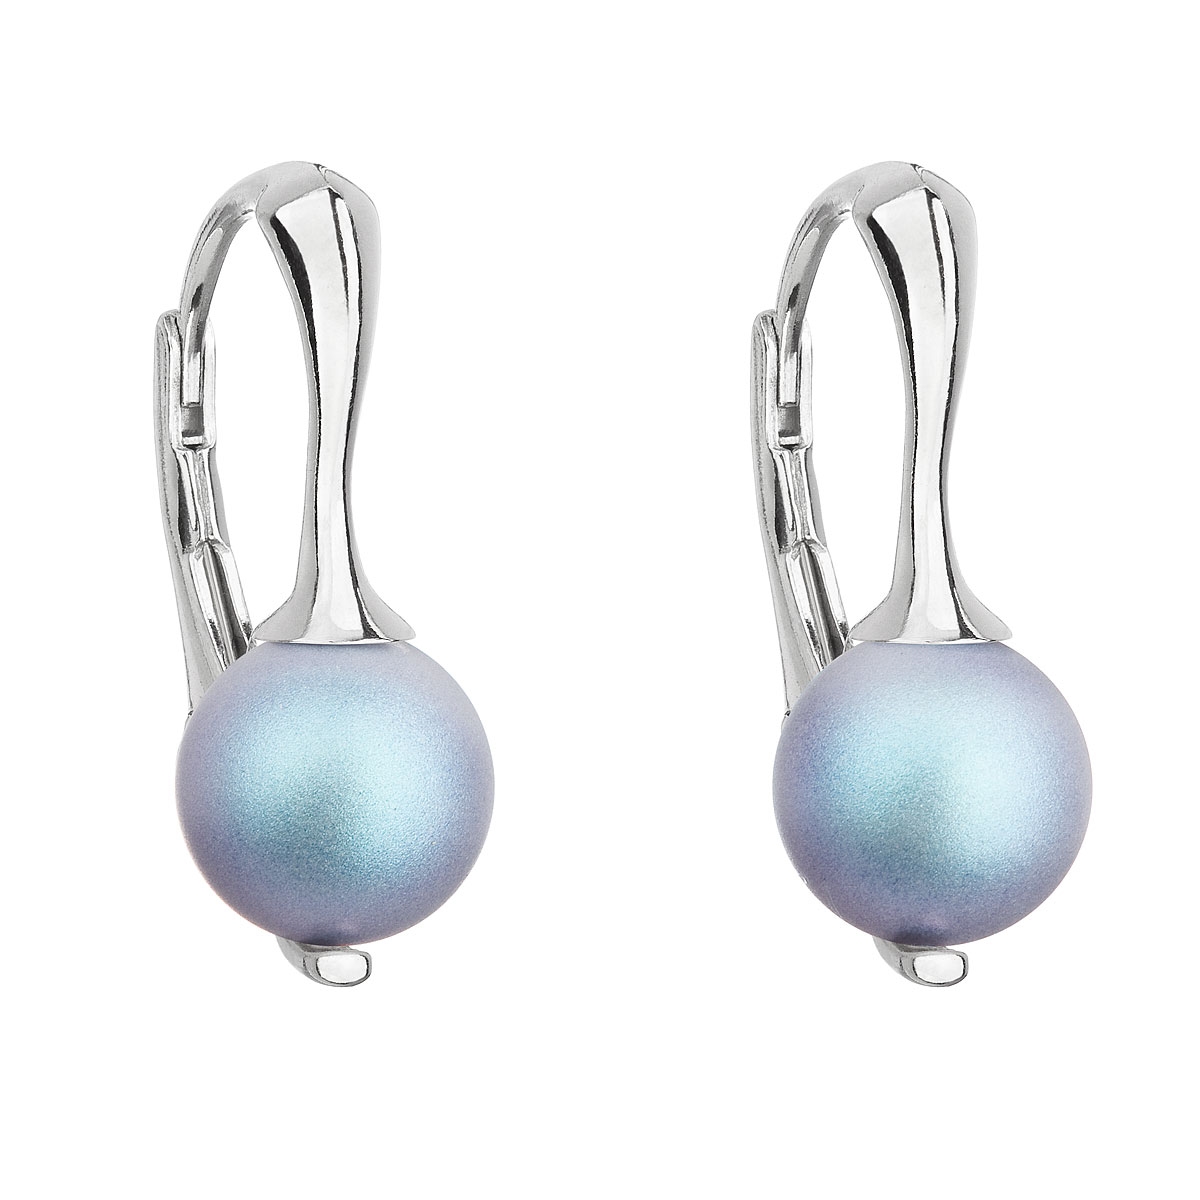 Strieborné náušnice s matnými perlami Crystals from Swarovski ® Light Blue